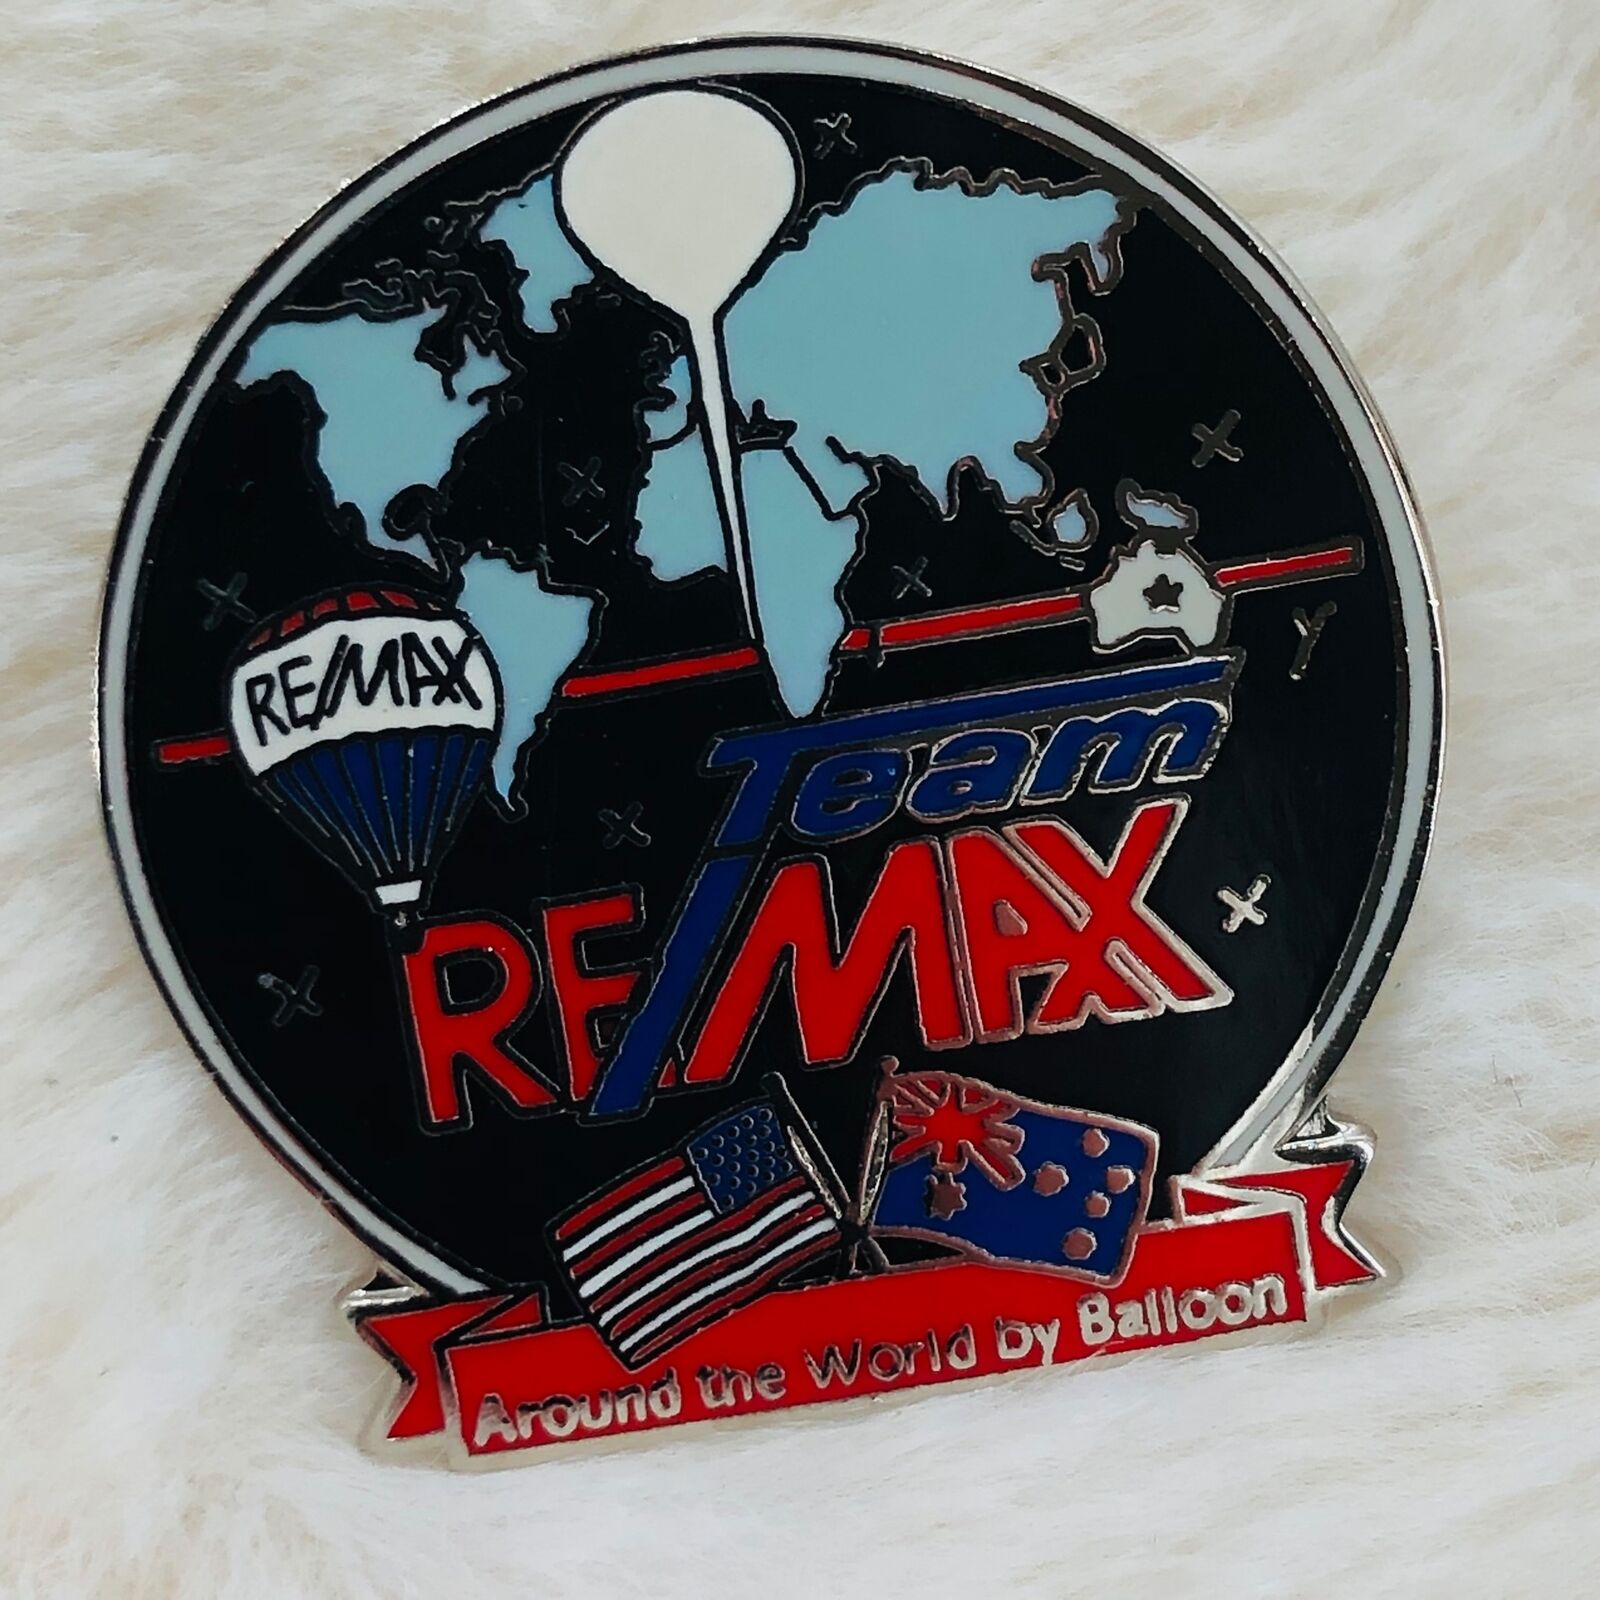 Around the World by Hot Air Balloon Team Remax Souvenir Pin USA Australia